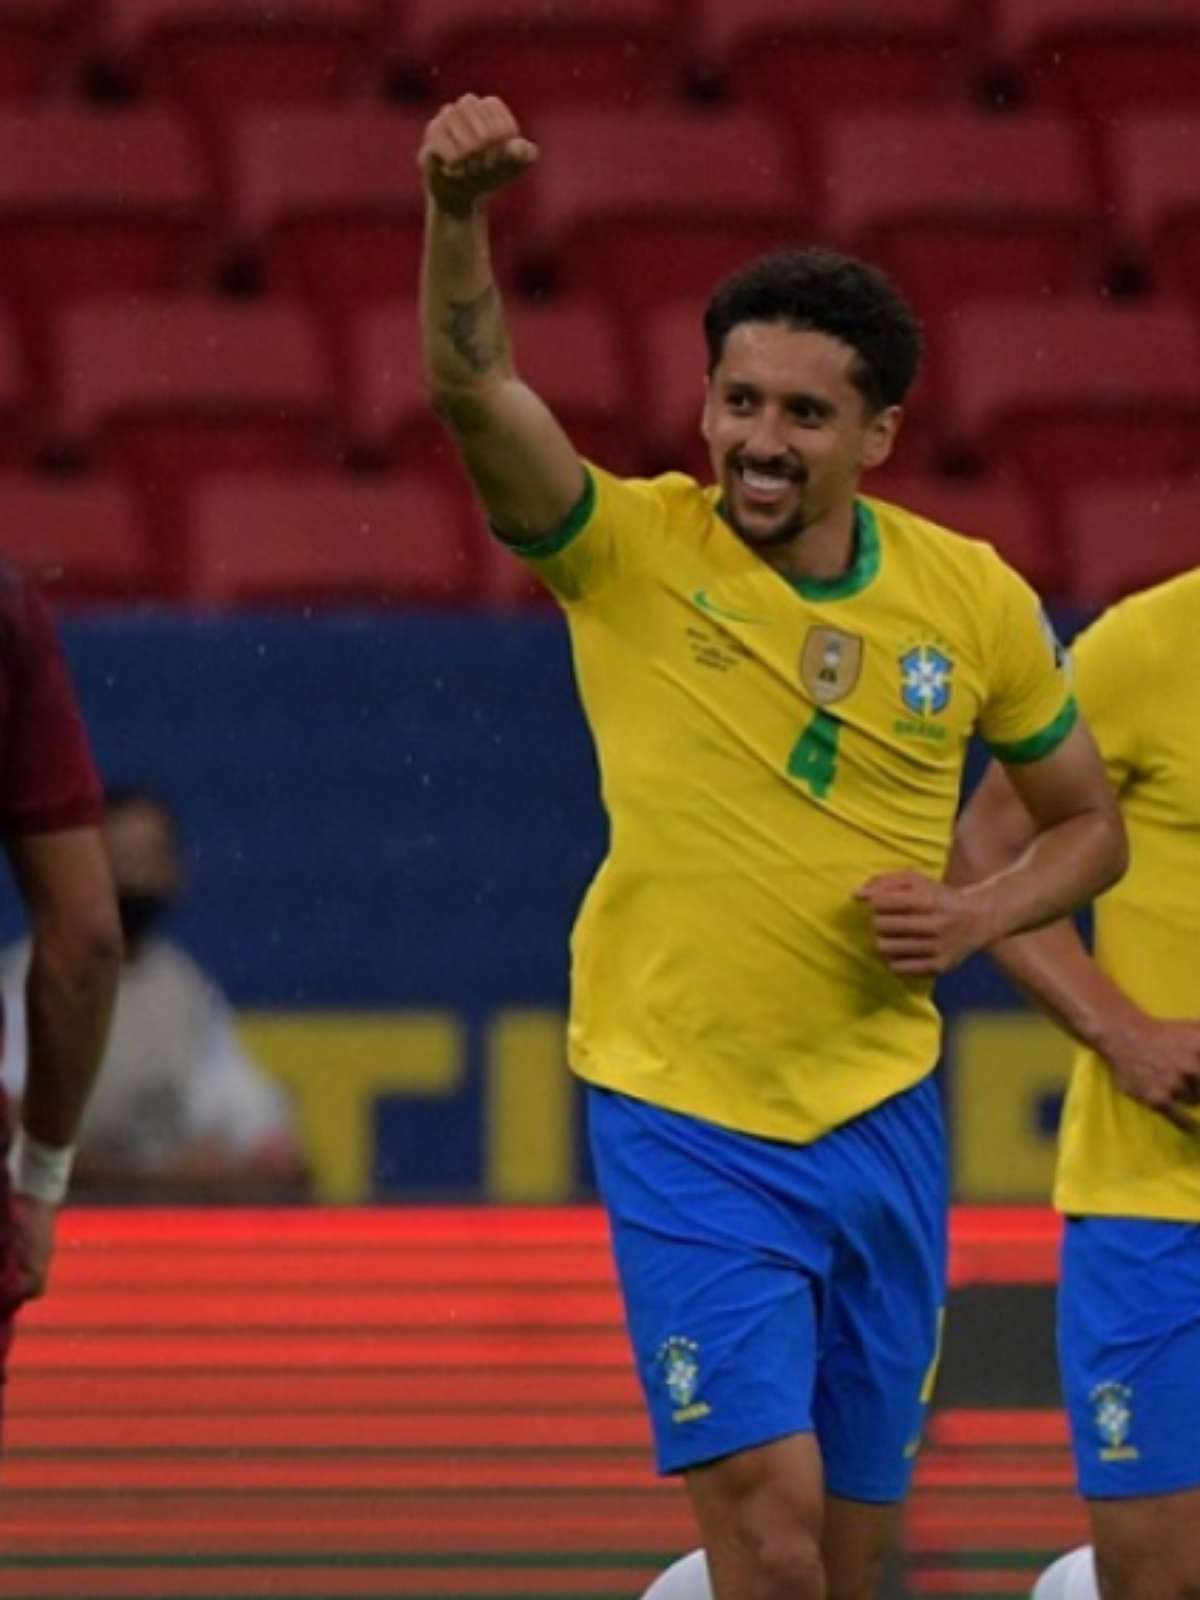 Vivendo momento artilheiro na seleção brasileira, Firmino vibra